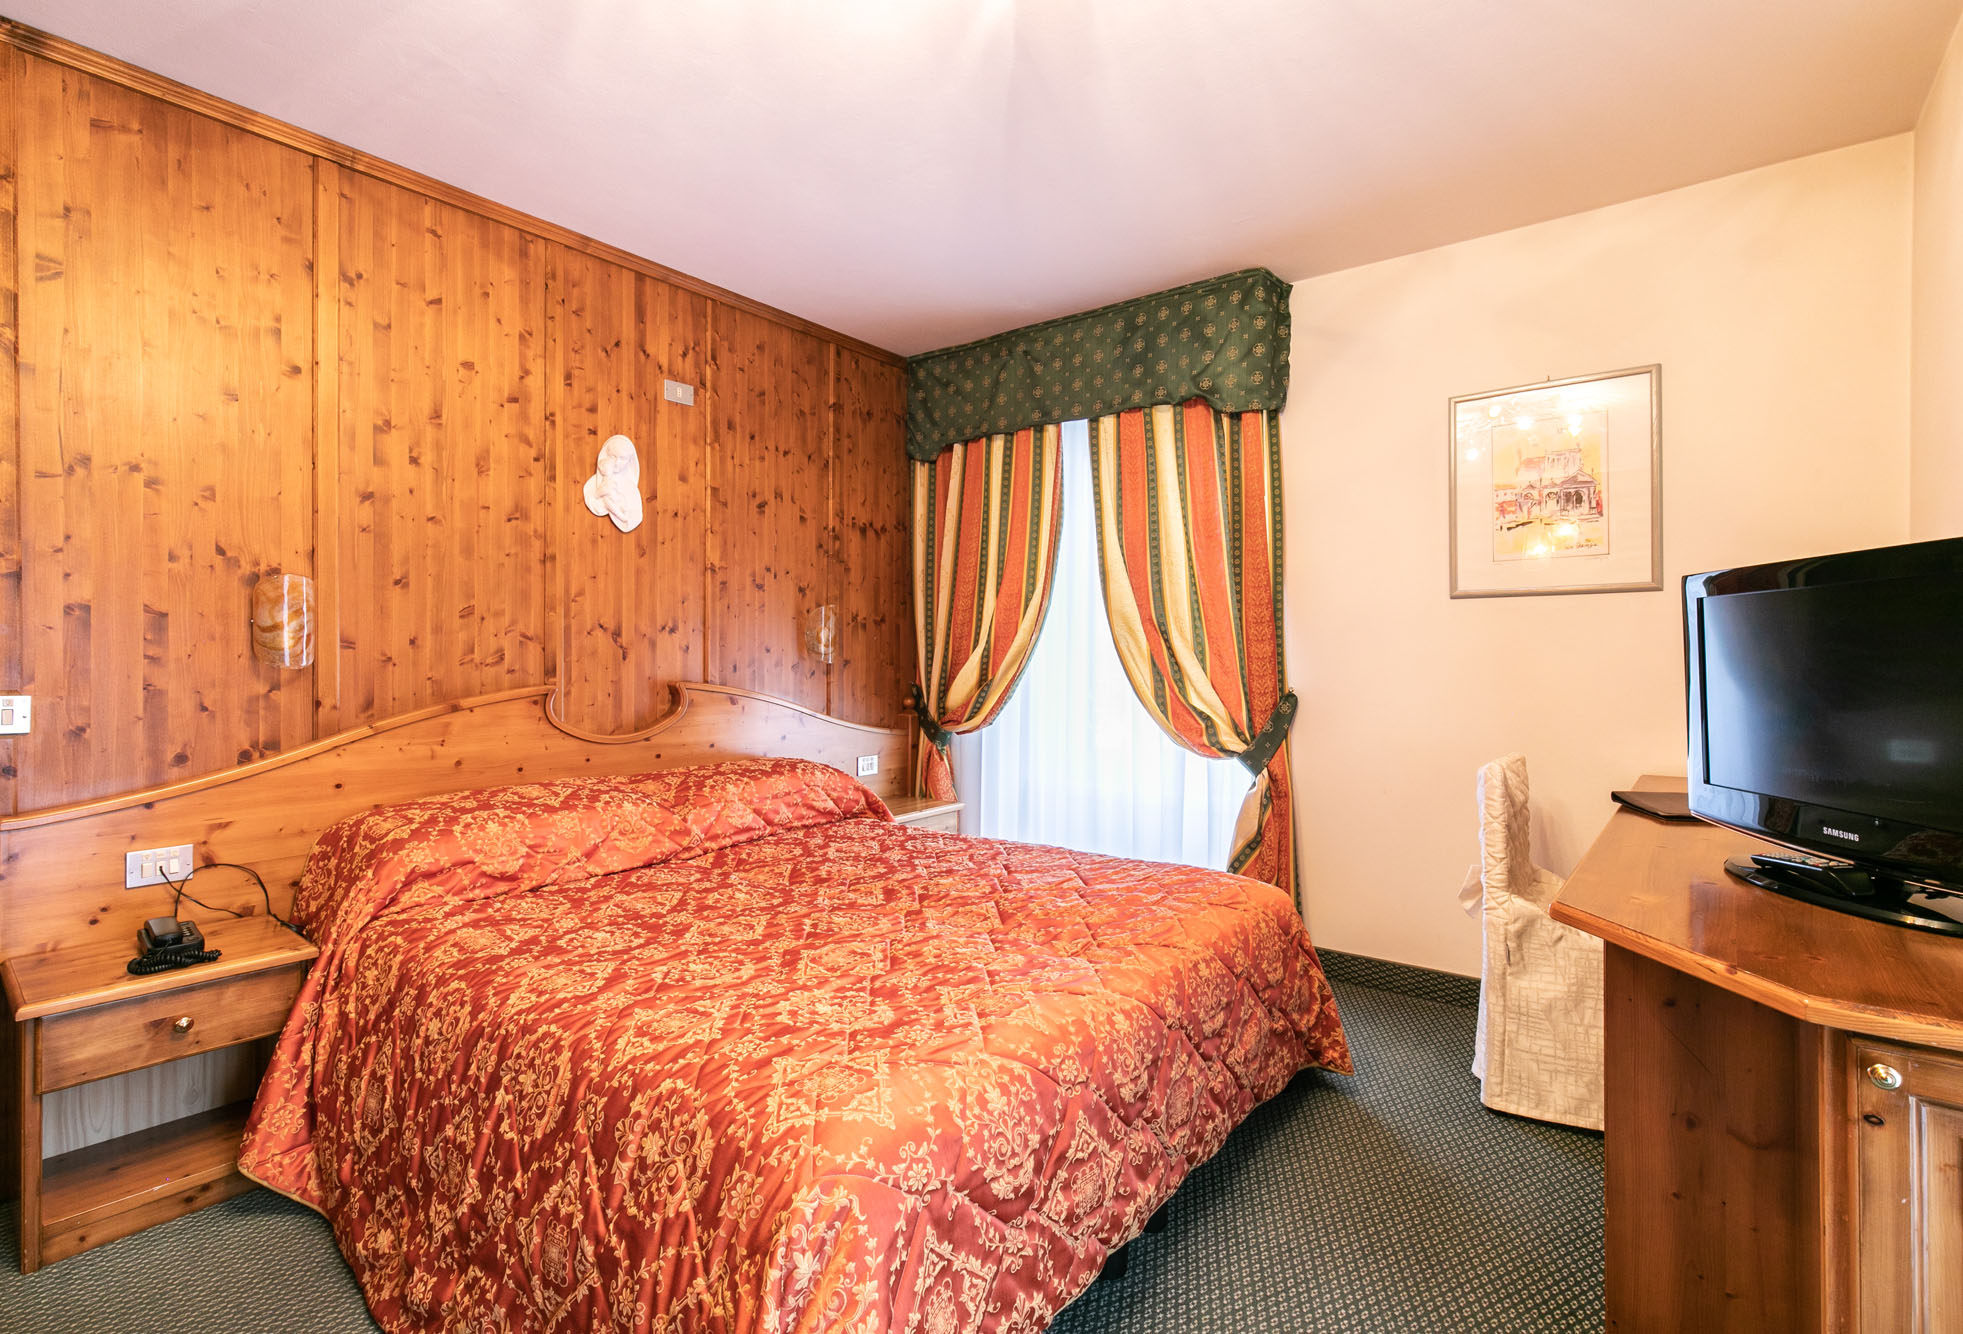 Camera family di Grand Hotel des Alpes, albergo 4 stelle in centro a San Martino di Castrozza per 3 persone